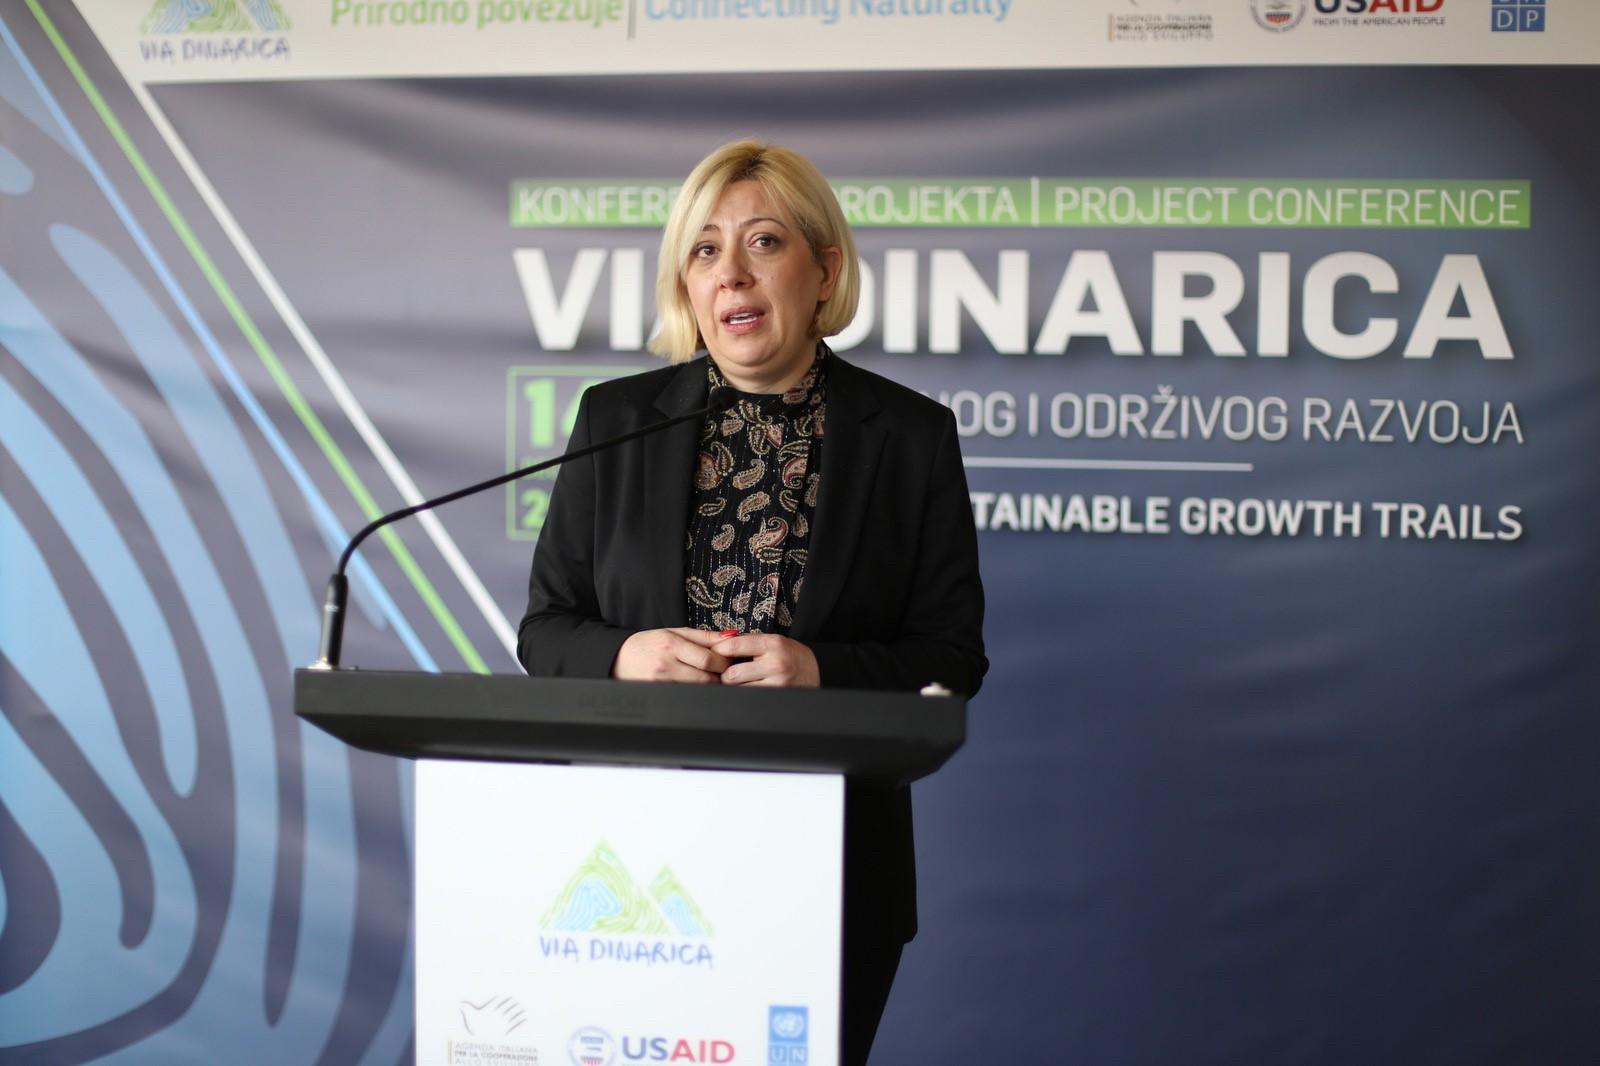 Ministrica Đapo na konferenciji Via Dinarica: Ovi vidovi turizma omogućavaju razvoj na održiv način